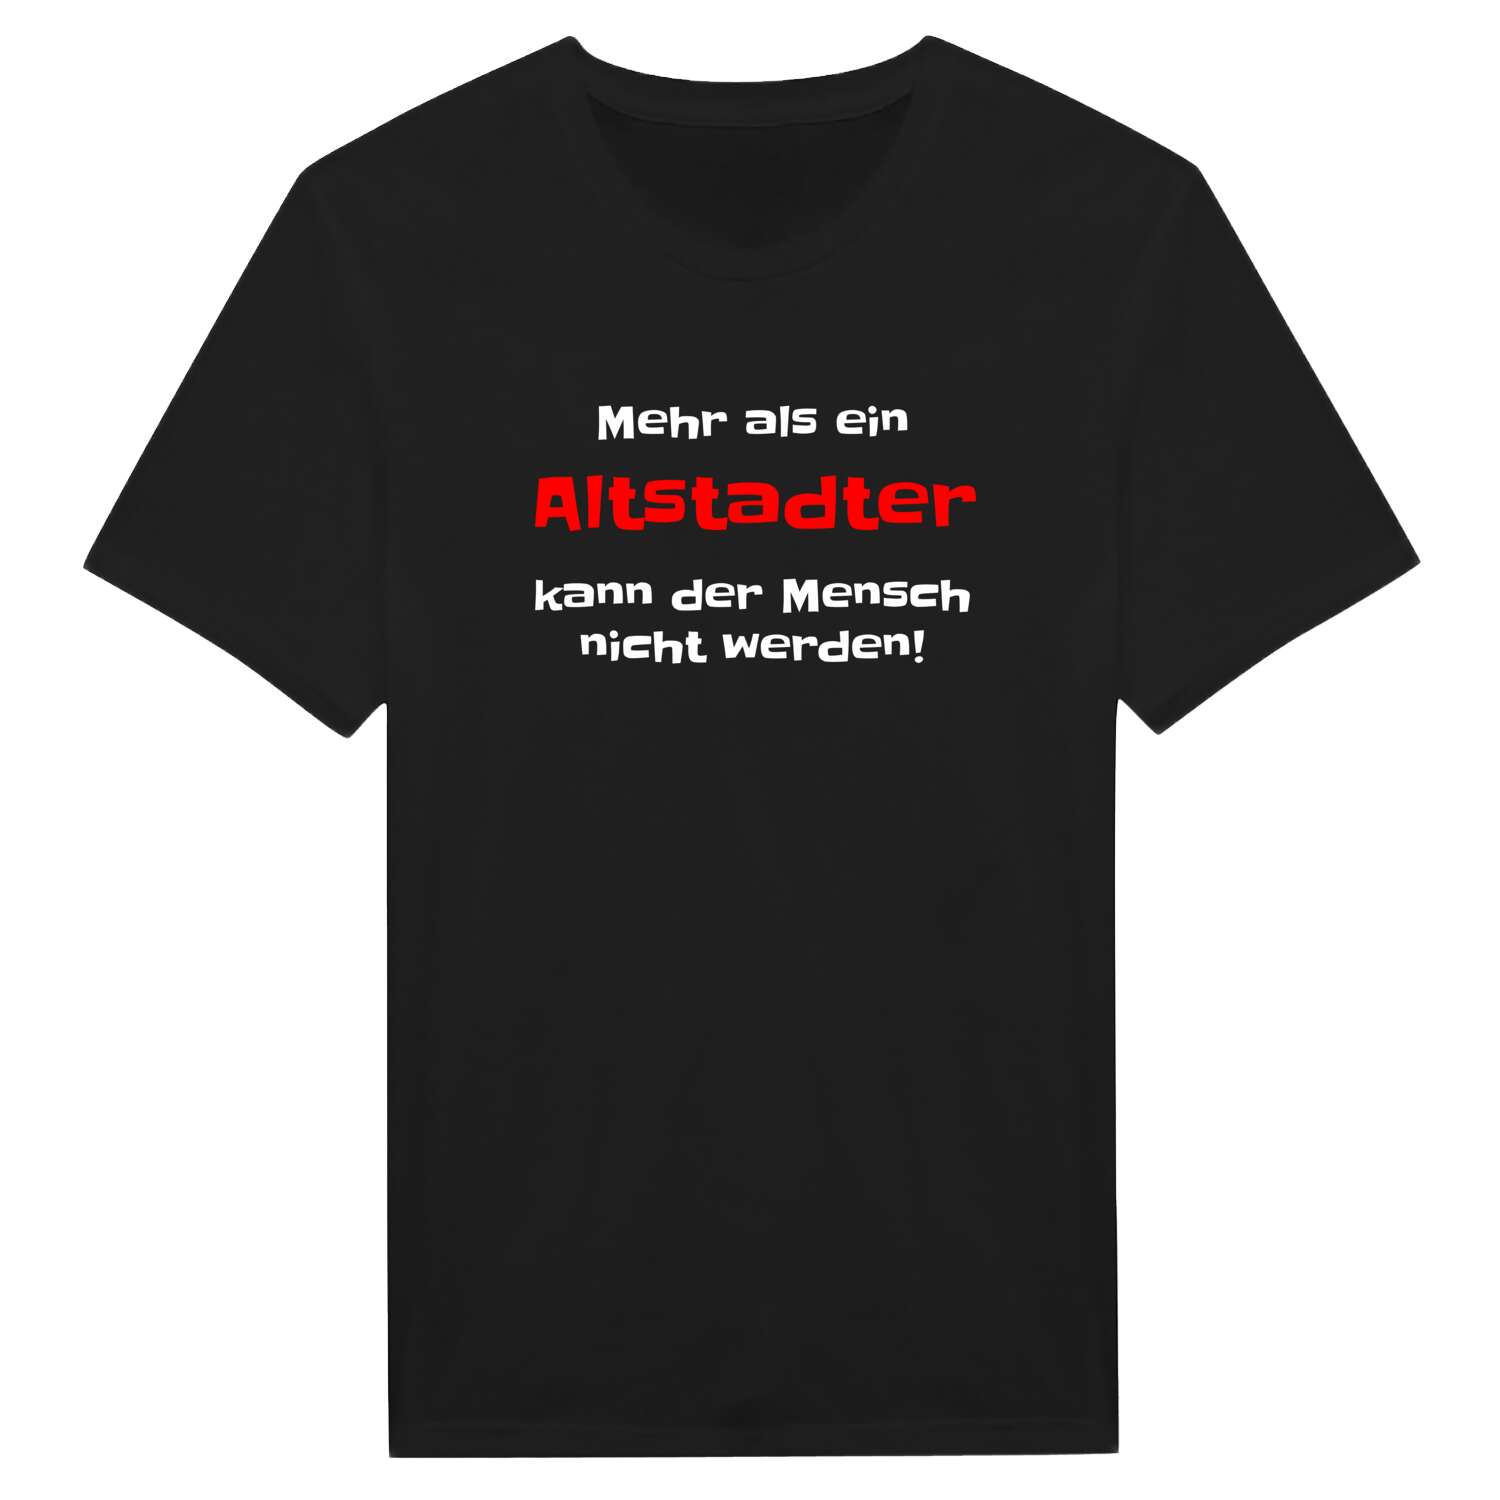 Altstadt T-Shirt »Mehr als ein«